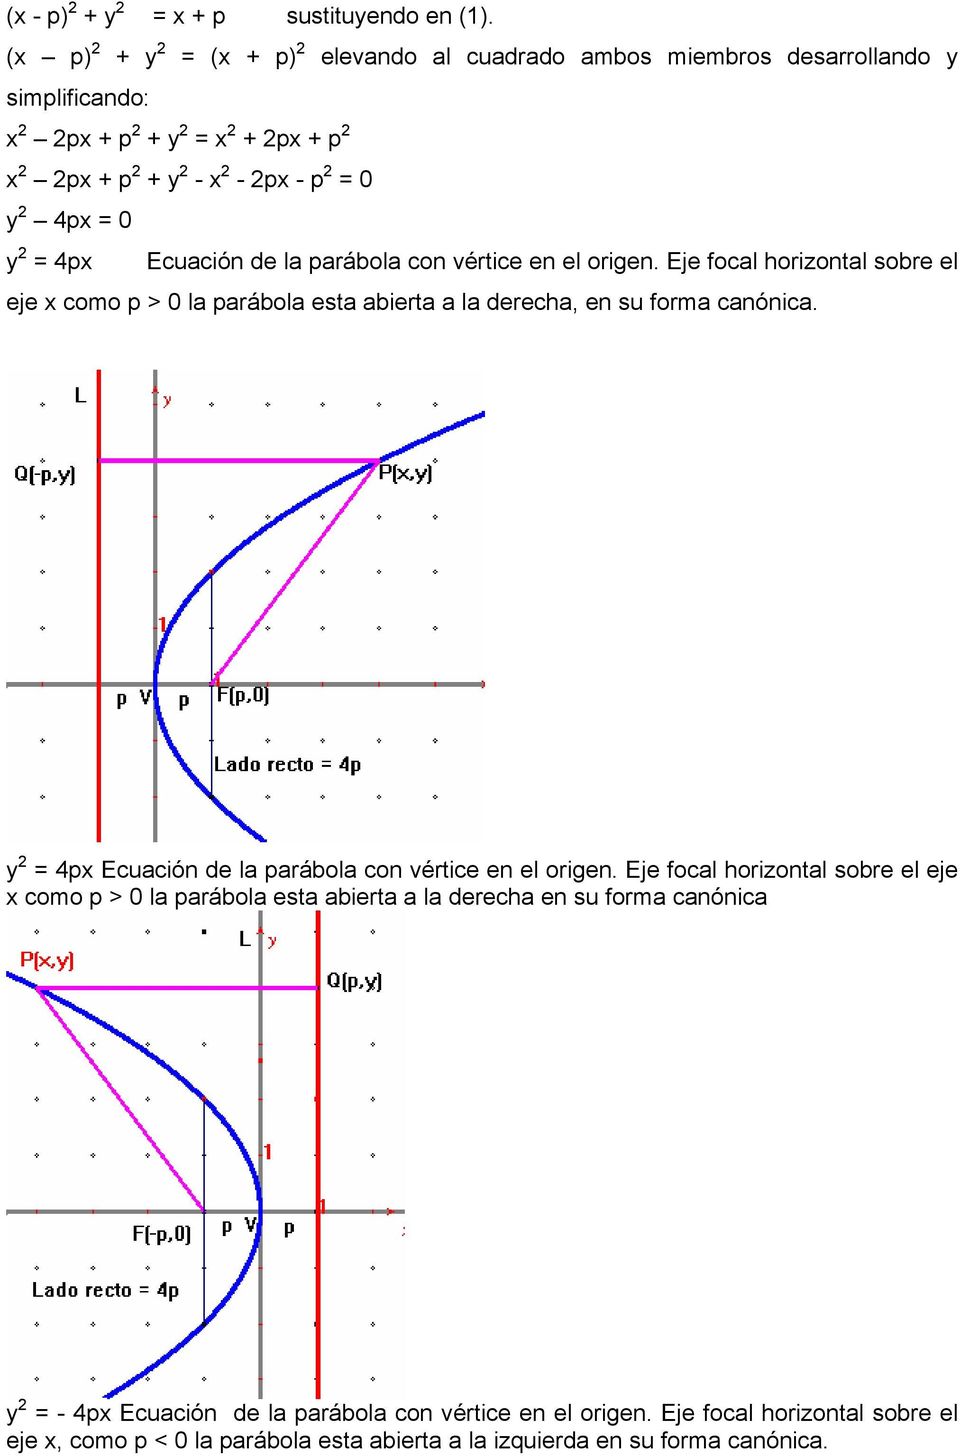 la parábola con vértice en el origen. Eje focal horizontal sobre el eje x como p > 0 la parábola esta abierta a la derecha, en su forma canónica.